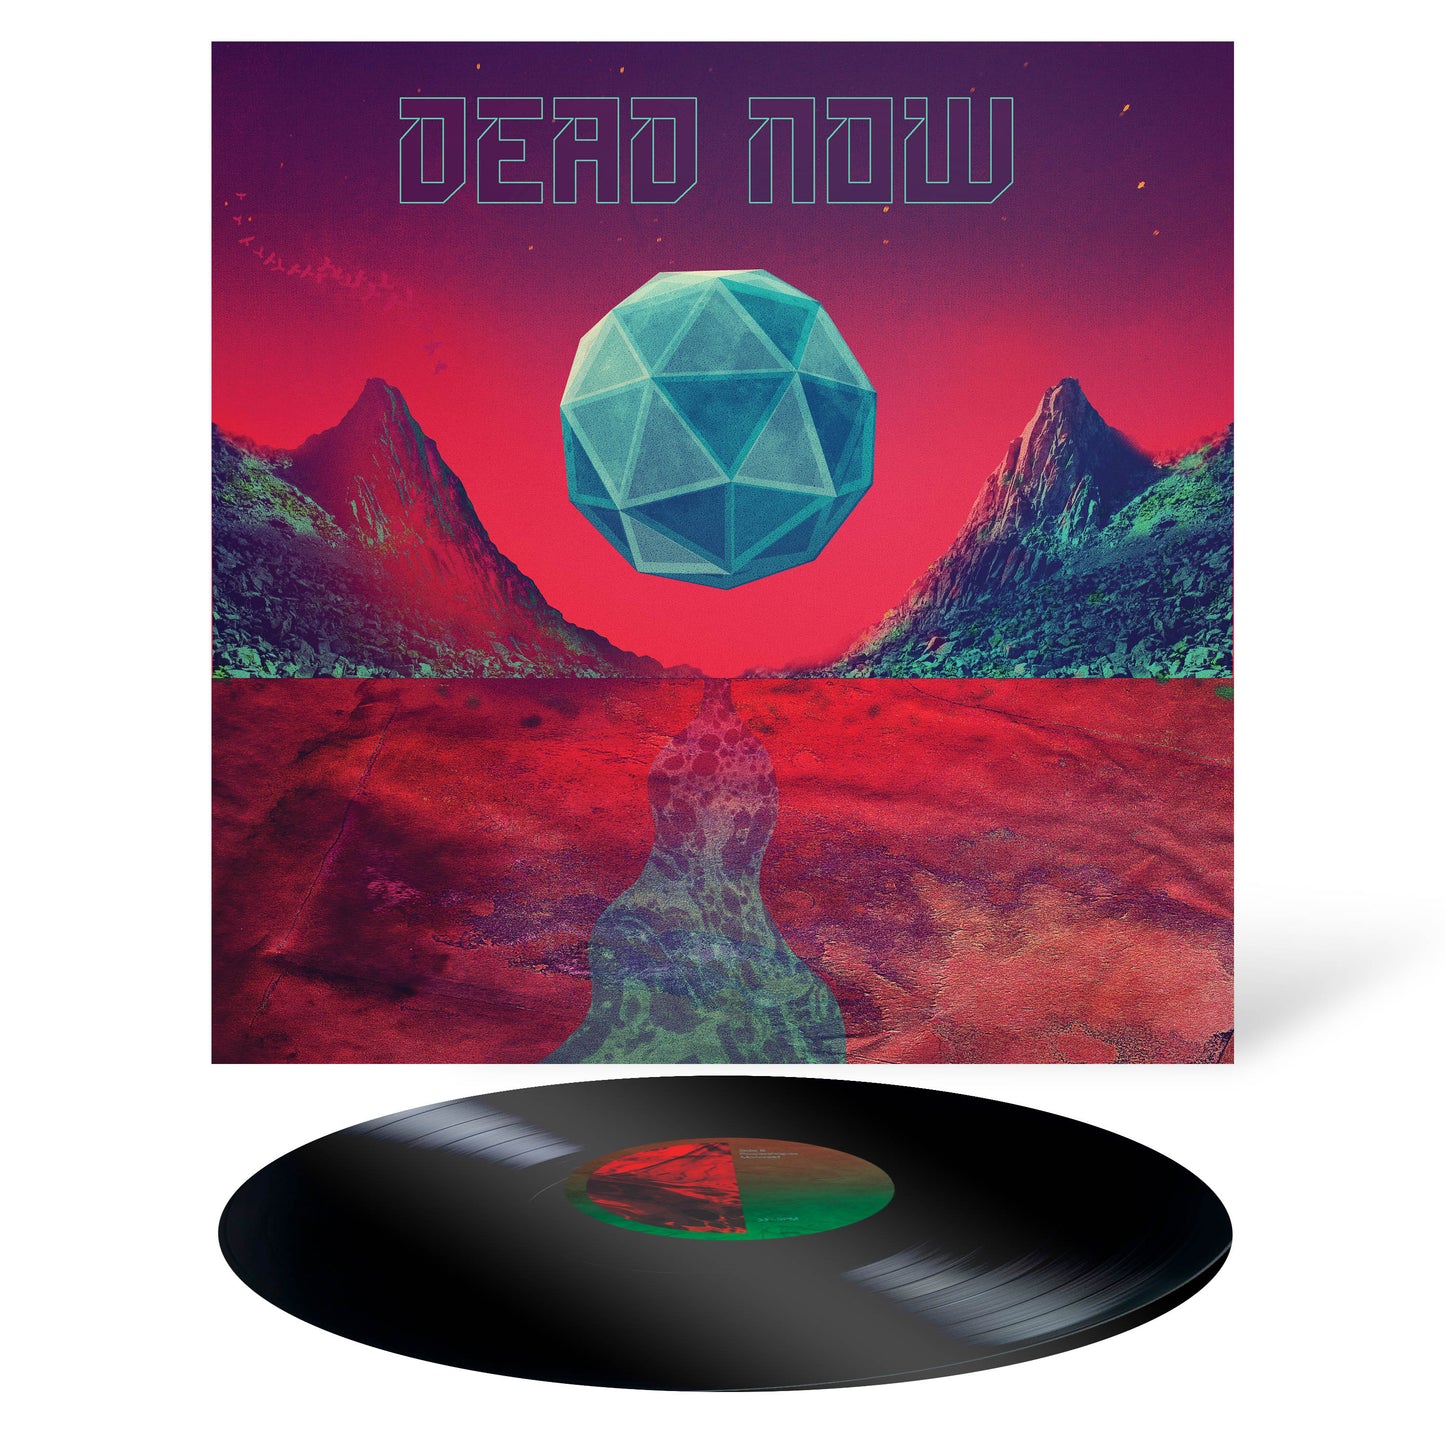 DEAD NOW - Dead Now - 12" Vinyl LP